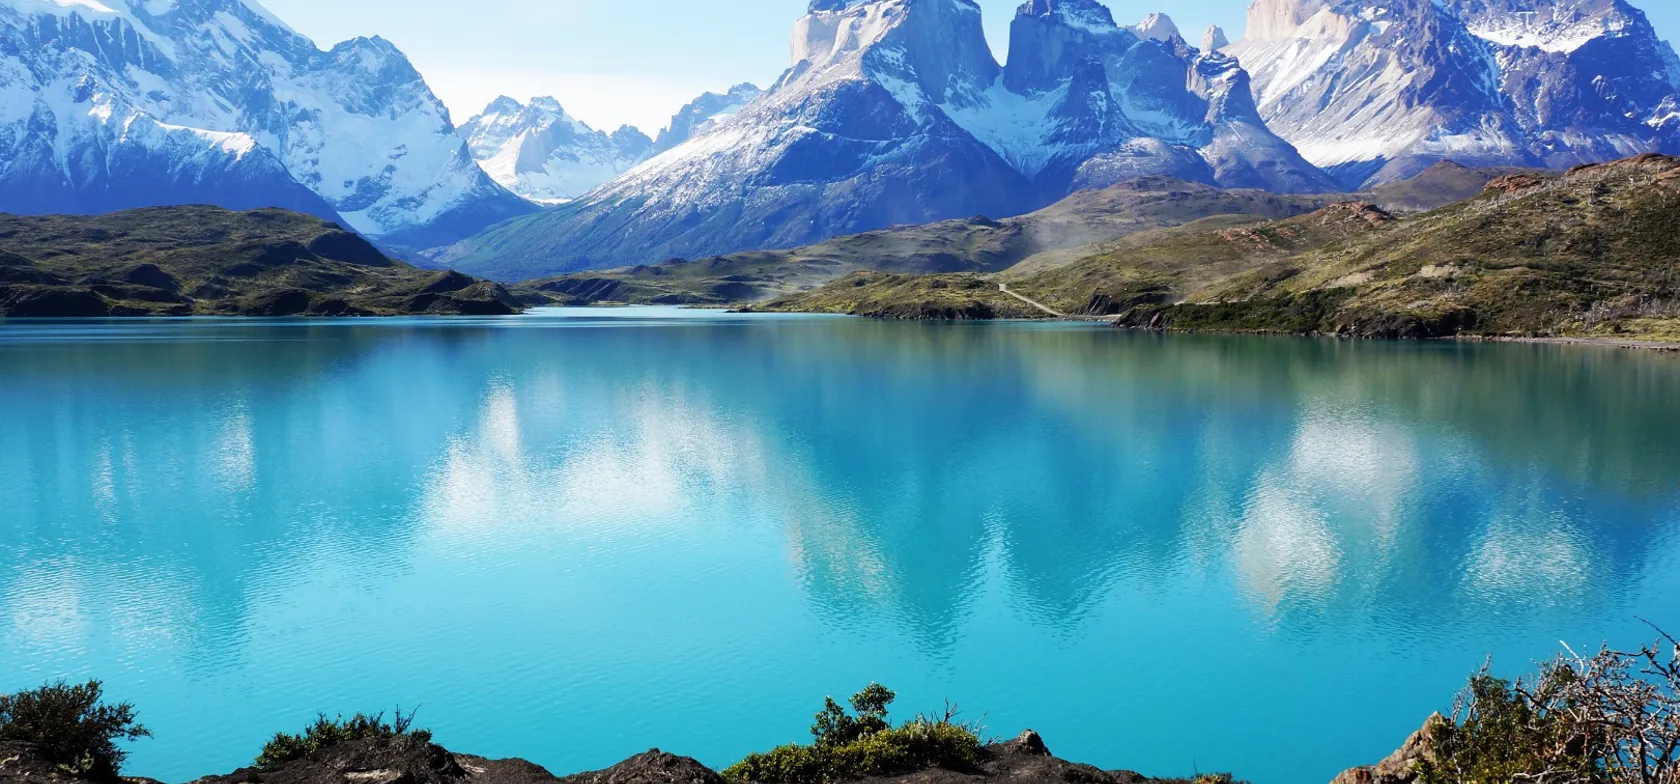 Torres del Paine nationalparken er et imponerende bjergområde med gletsjere, ismarker og turkisblå søer. Foto Ulla Haugsted